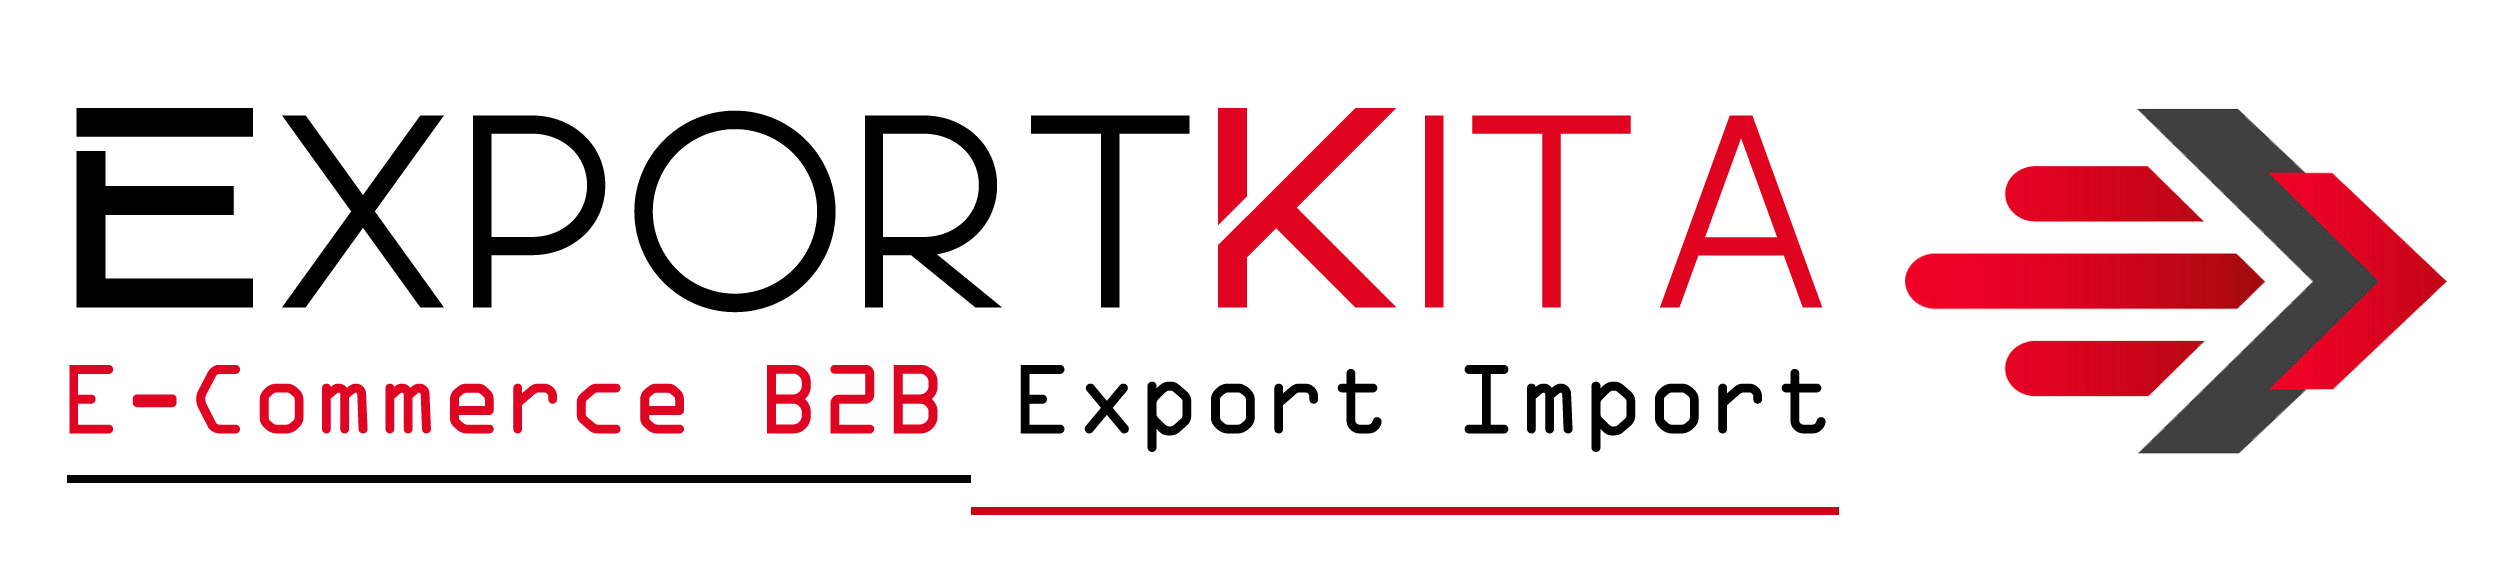 exportkita